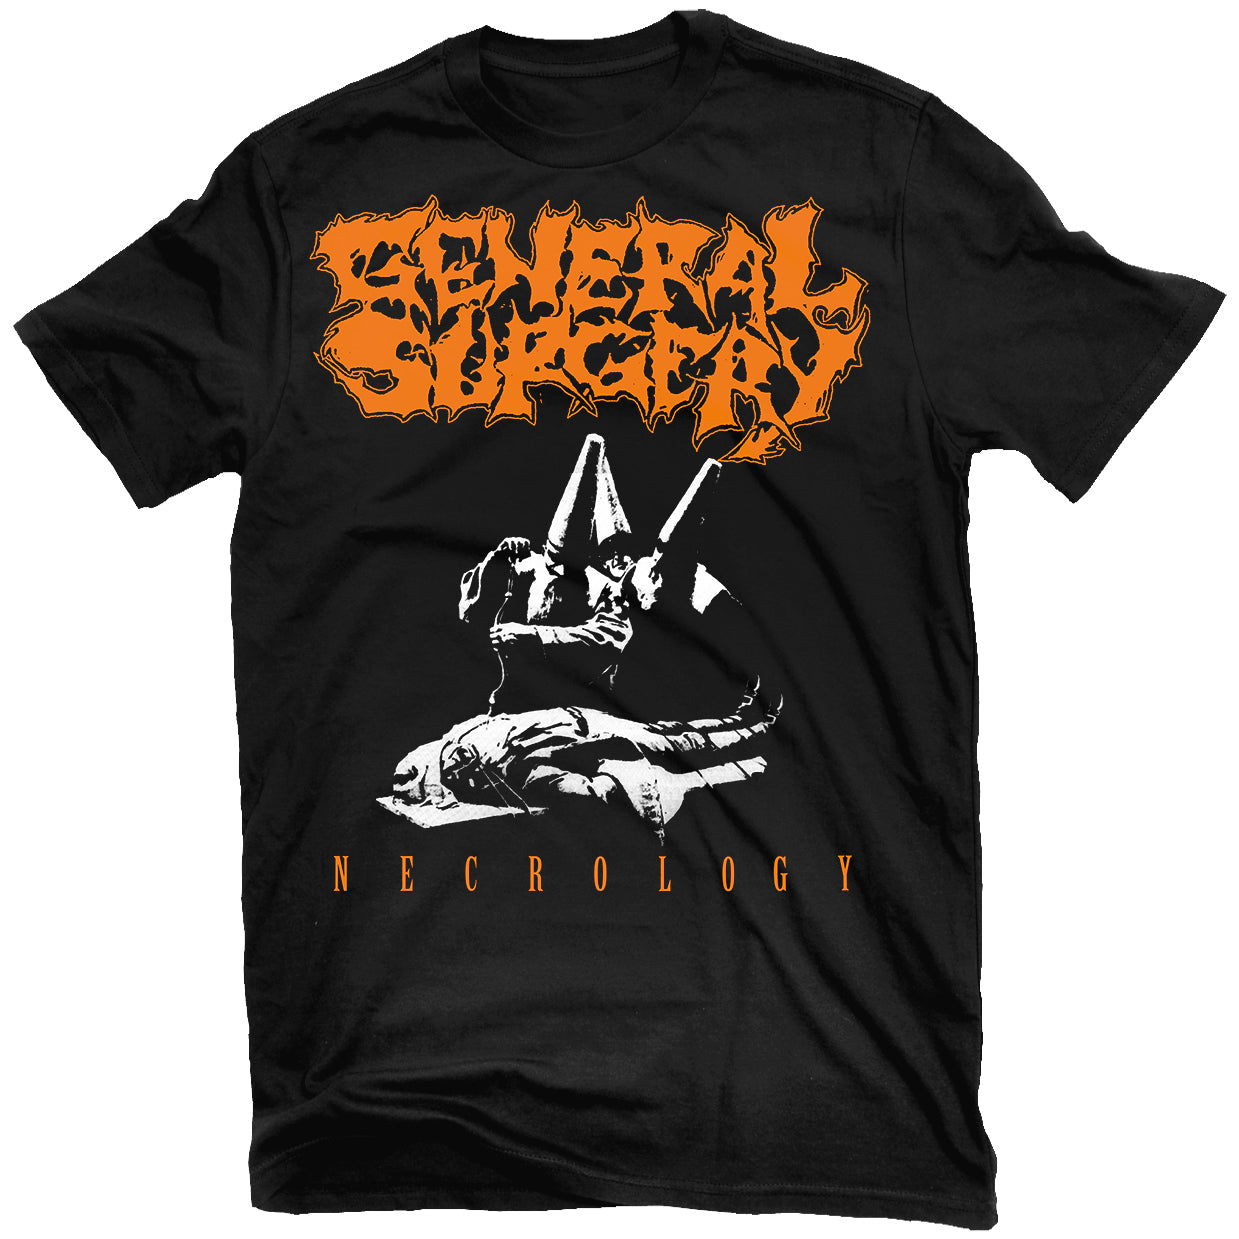 General Surgery "Necrology" T-Shirt